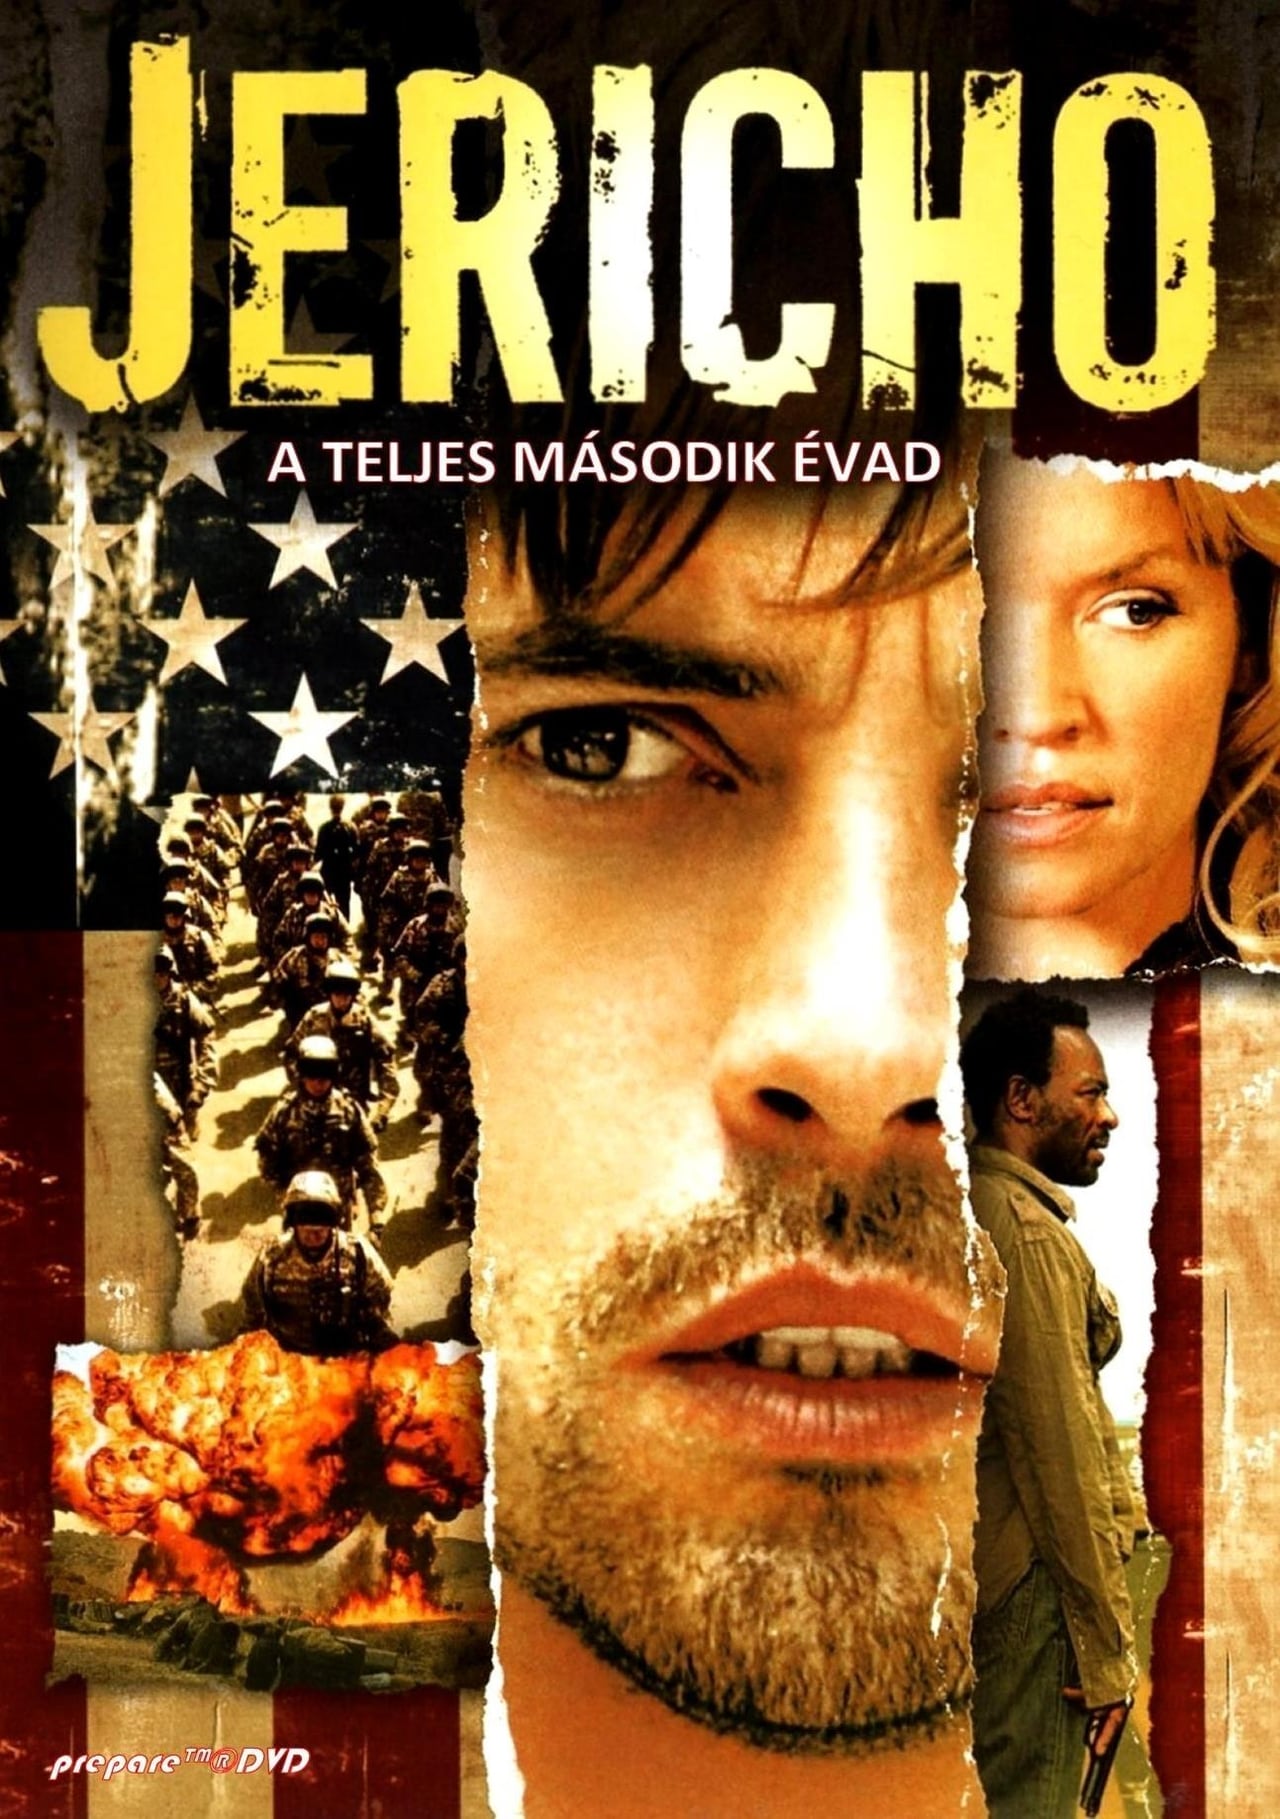 Jericho Season 2